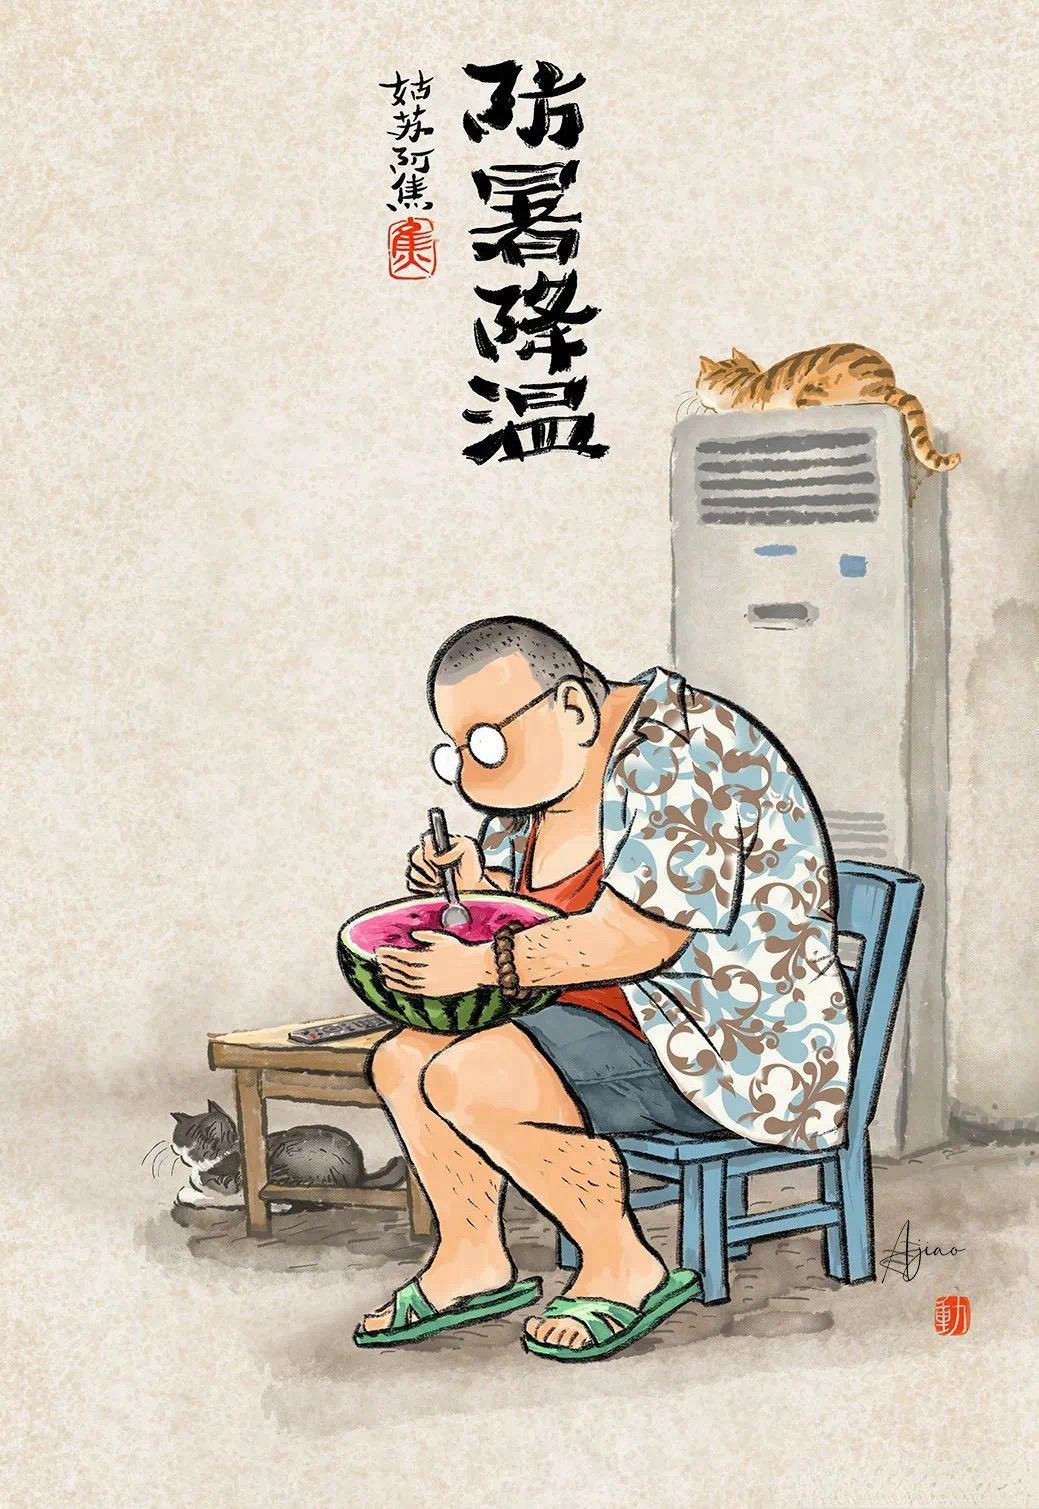 姑苏阿焦漫画胖子图片